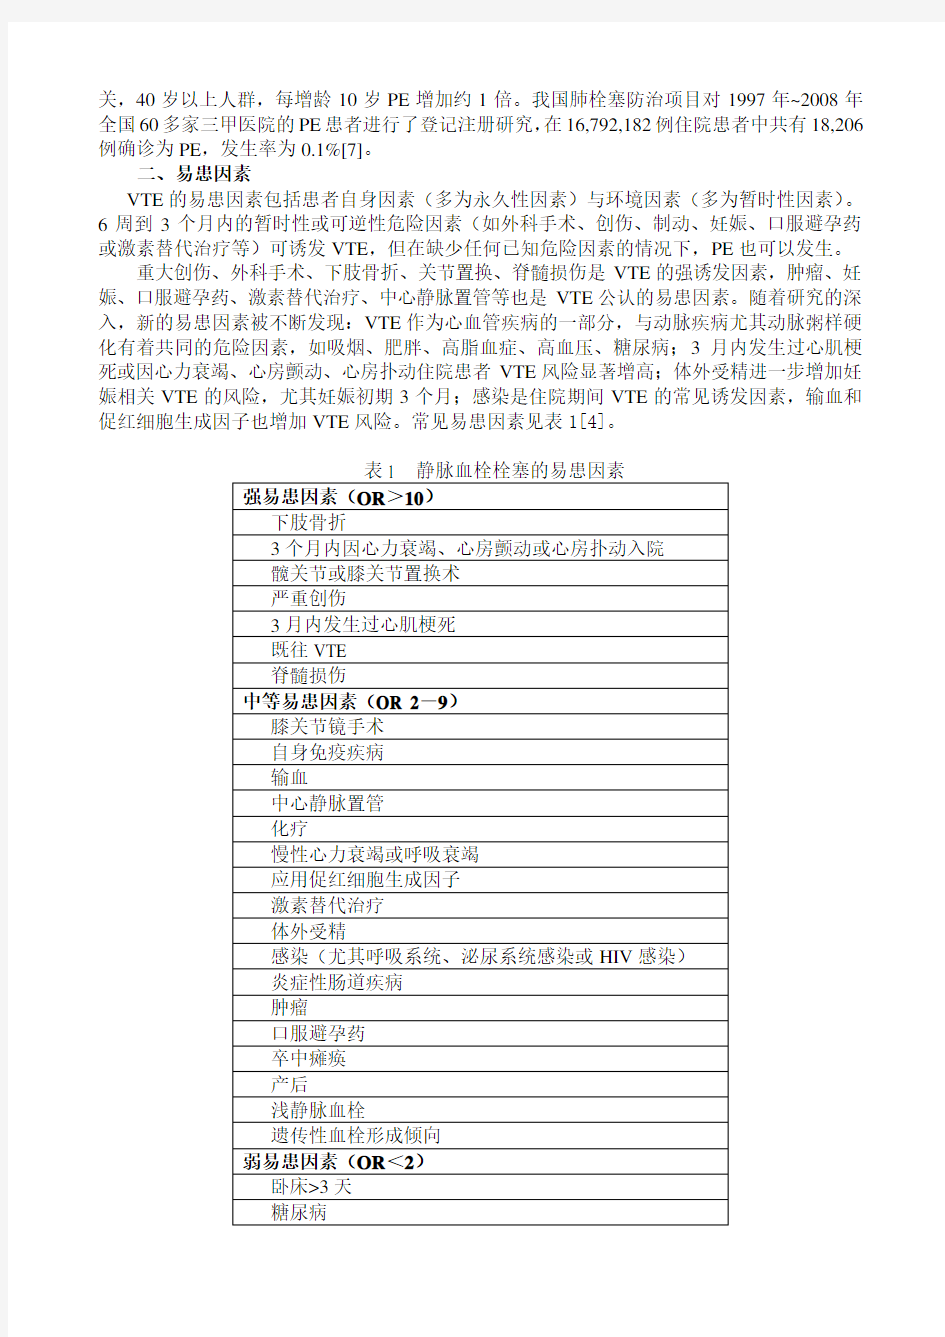 中国急性肺栓塞诊断与治疗指南(2020年)